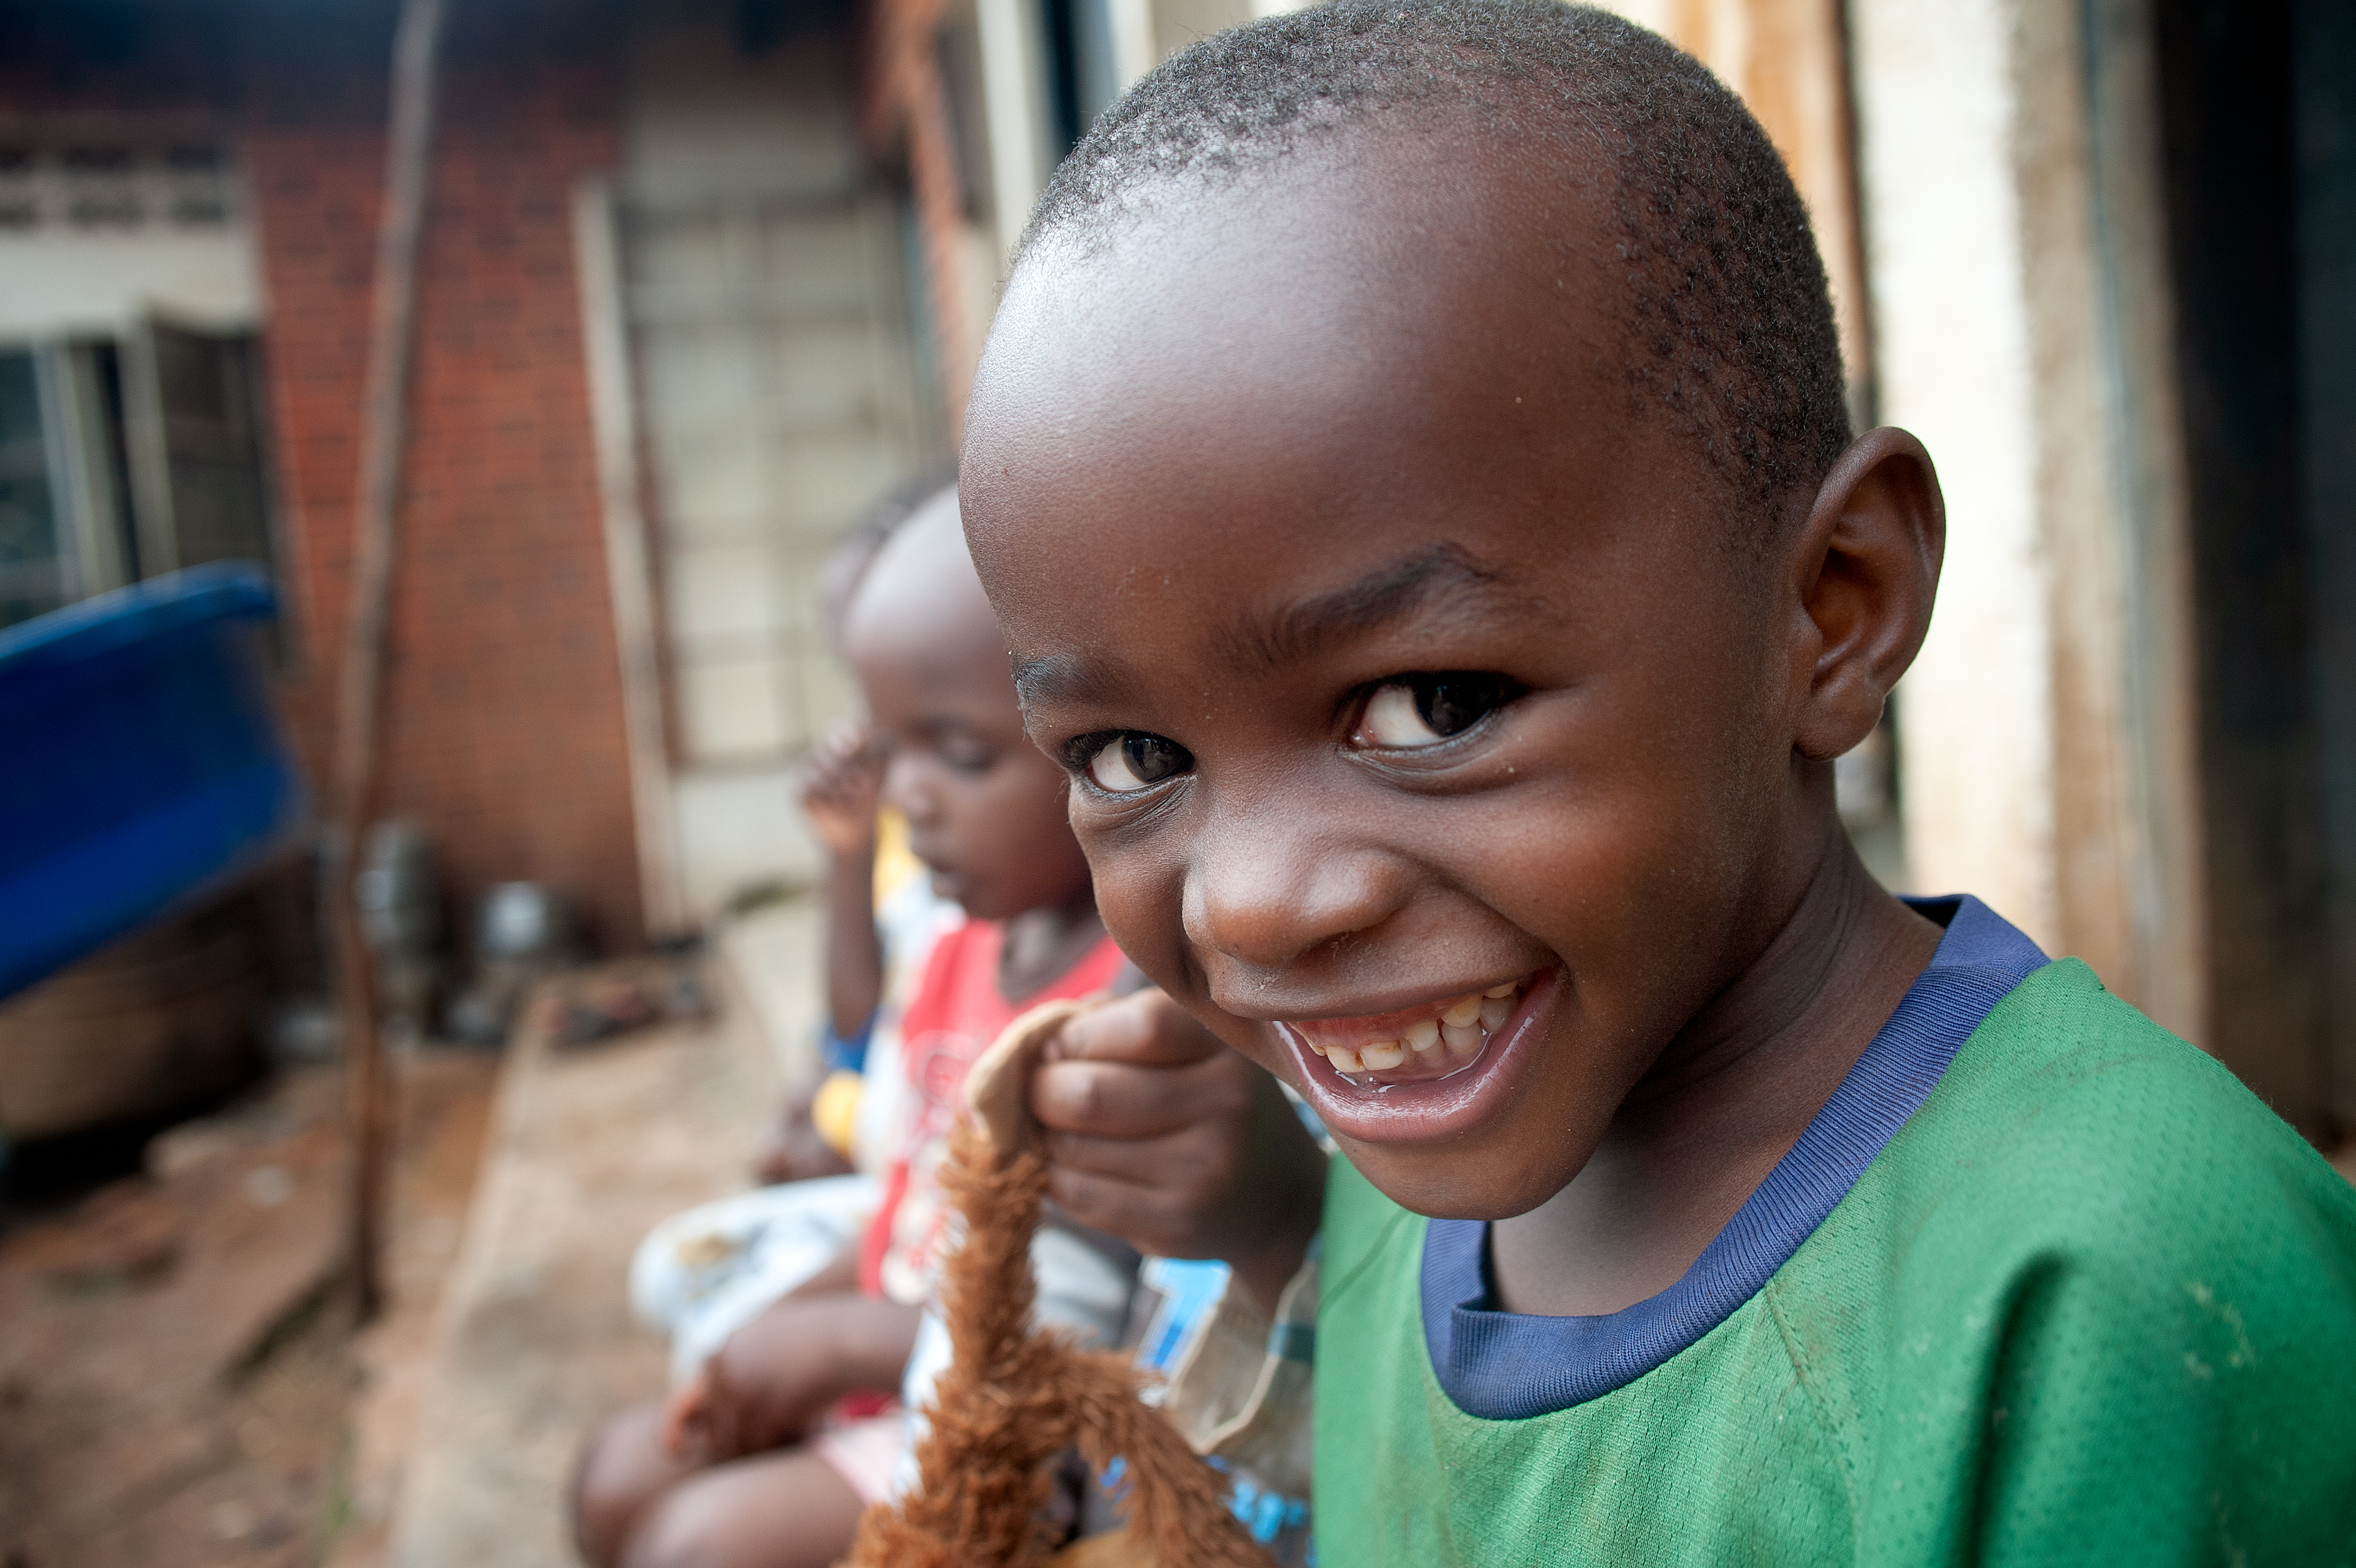 Smiling child in Uganda